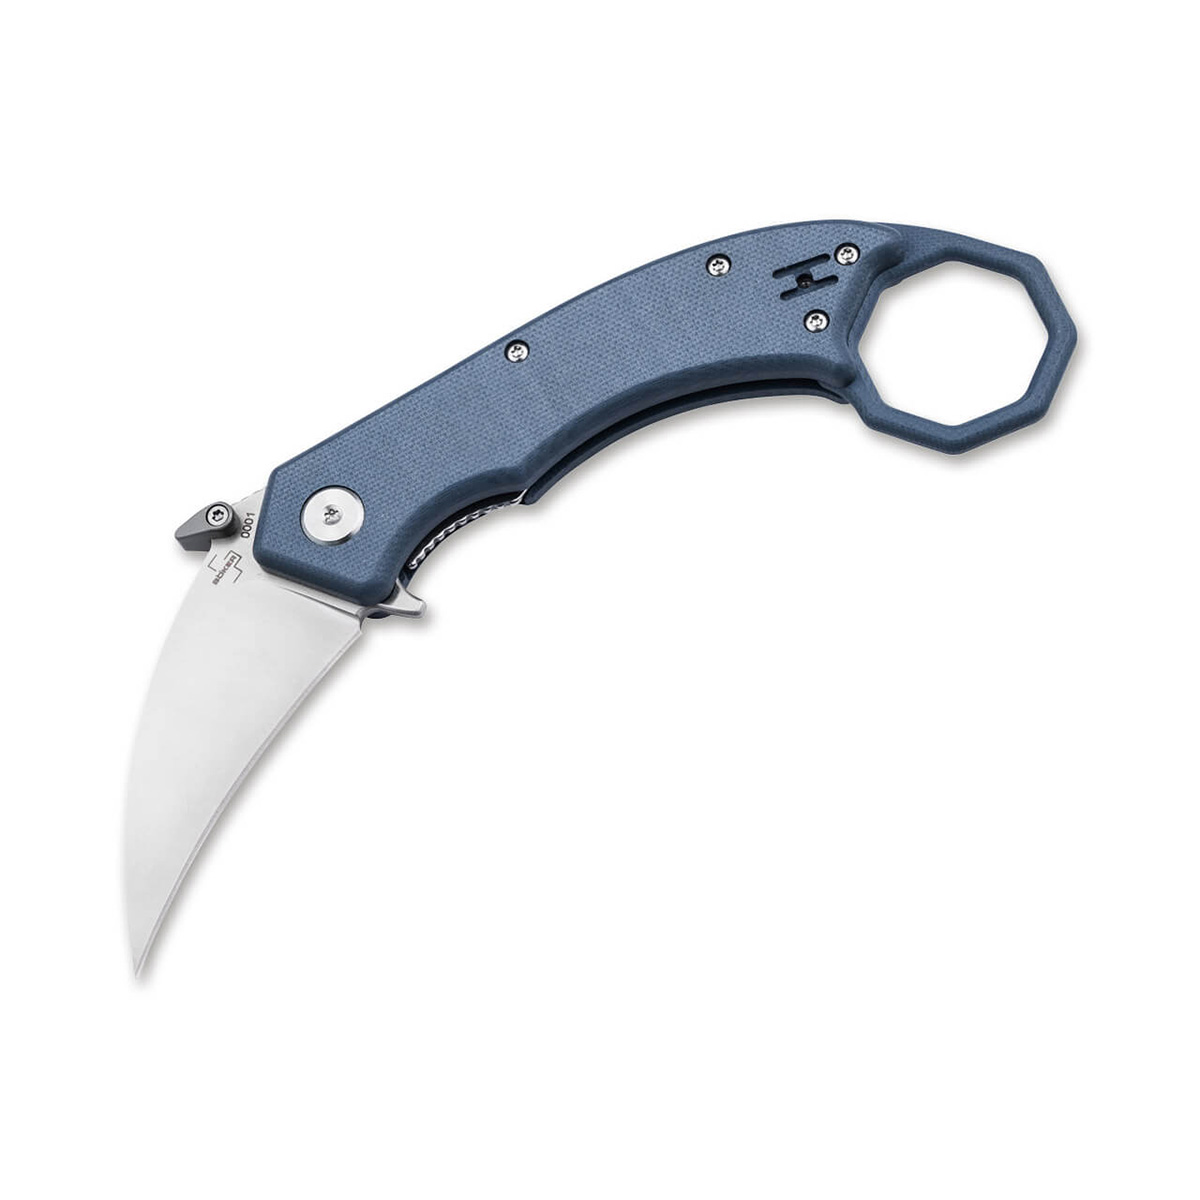 Складной нож Boker HEL Karambit, сталь 154CM, рукоять G10, blue/grey